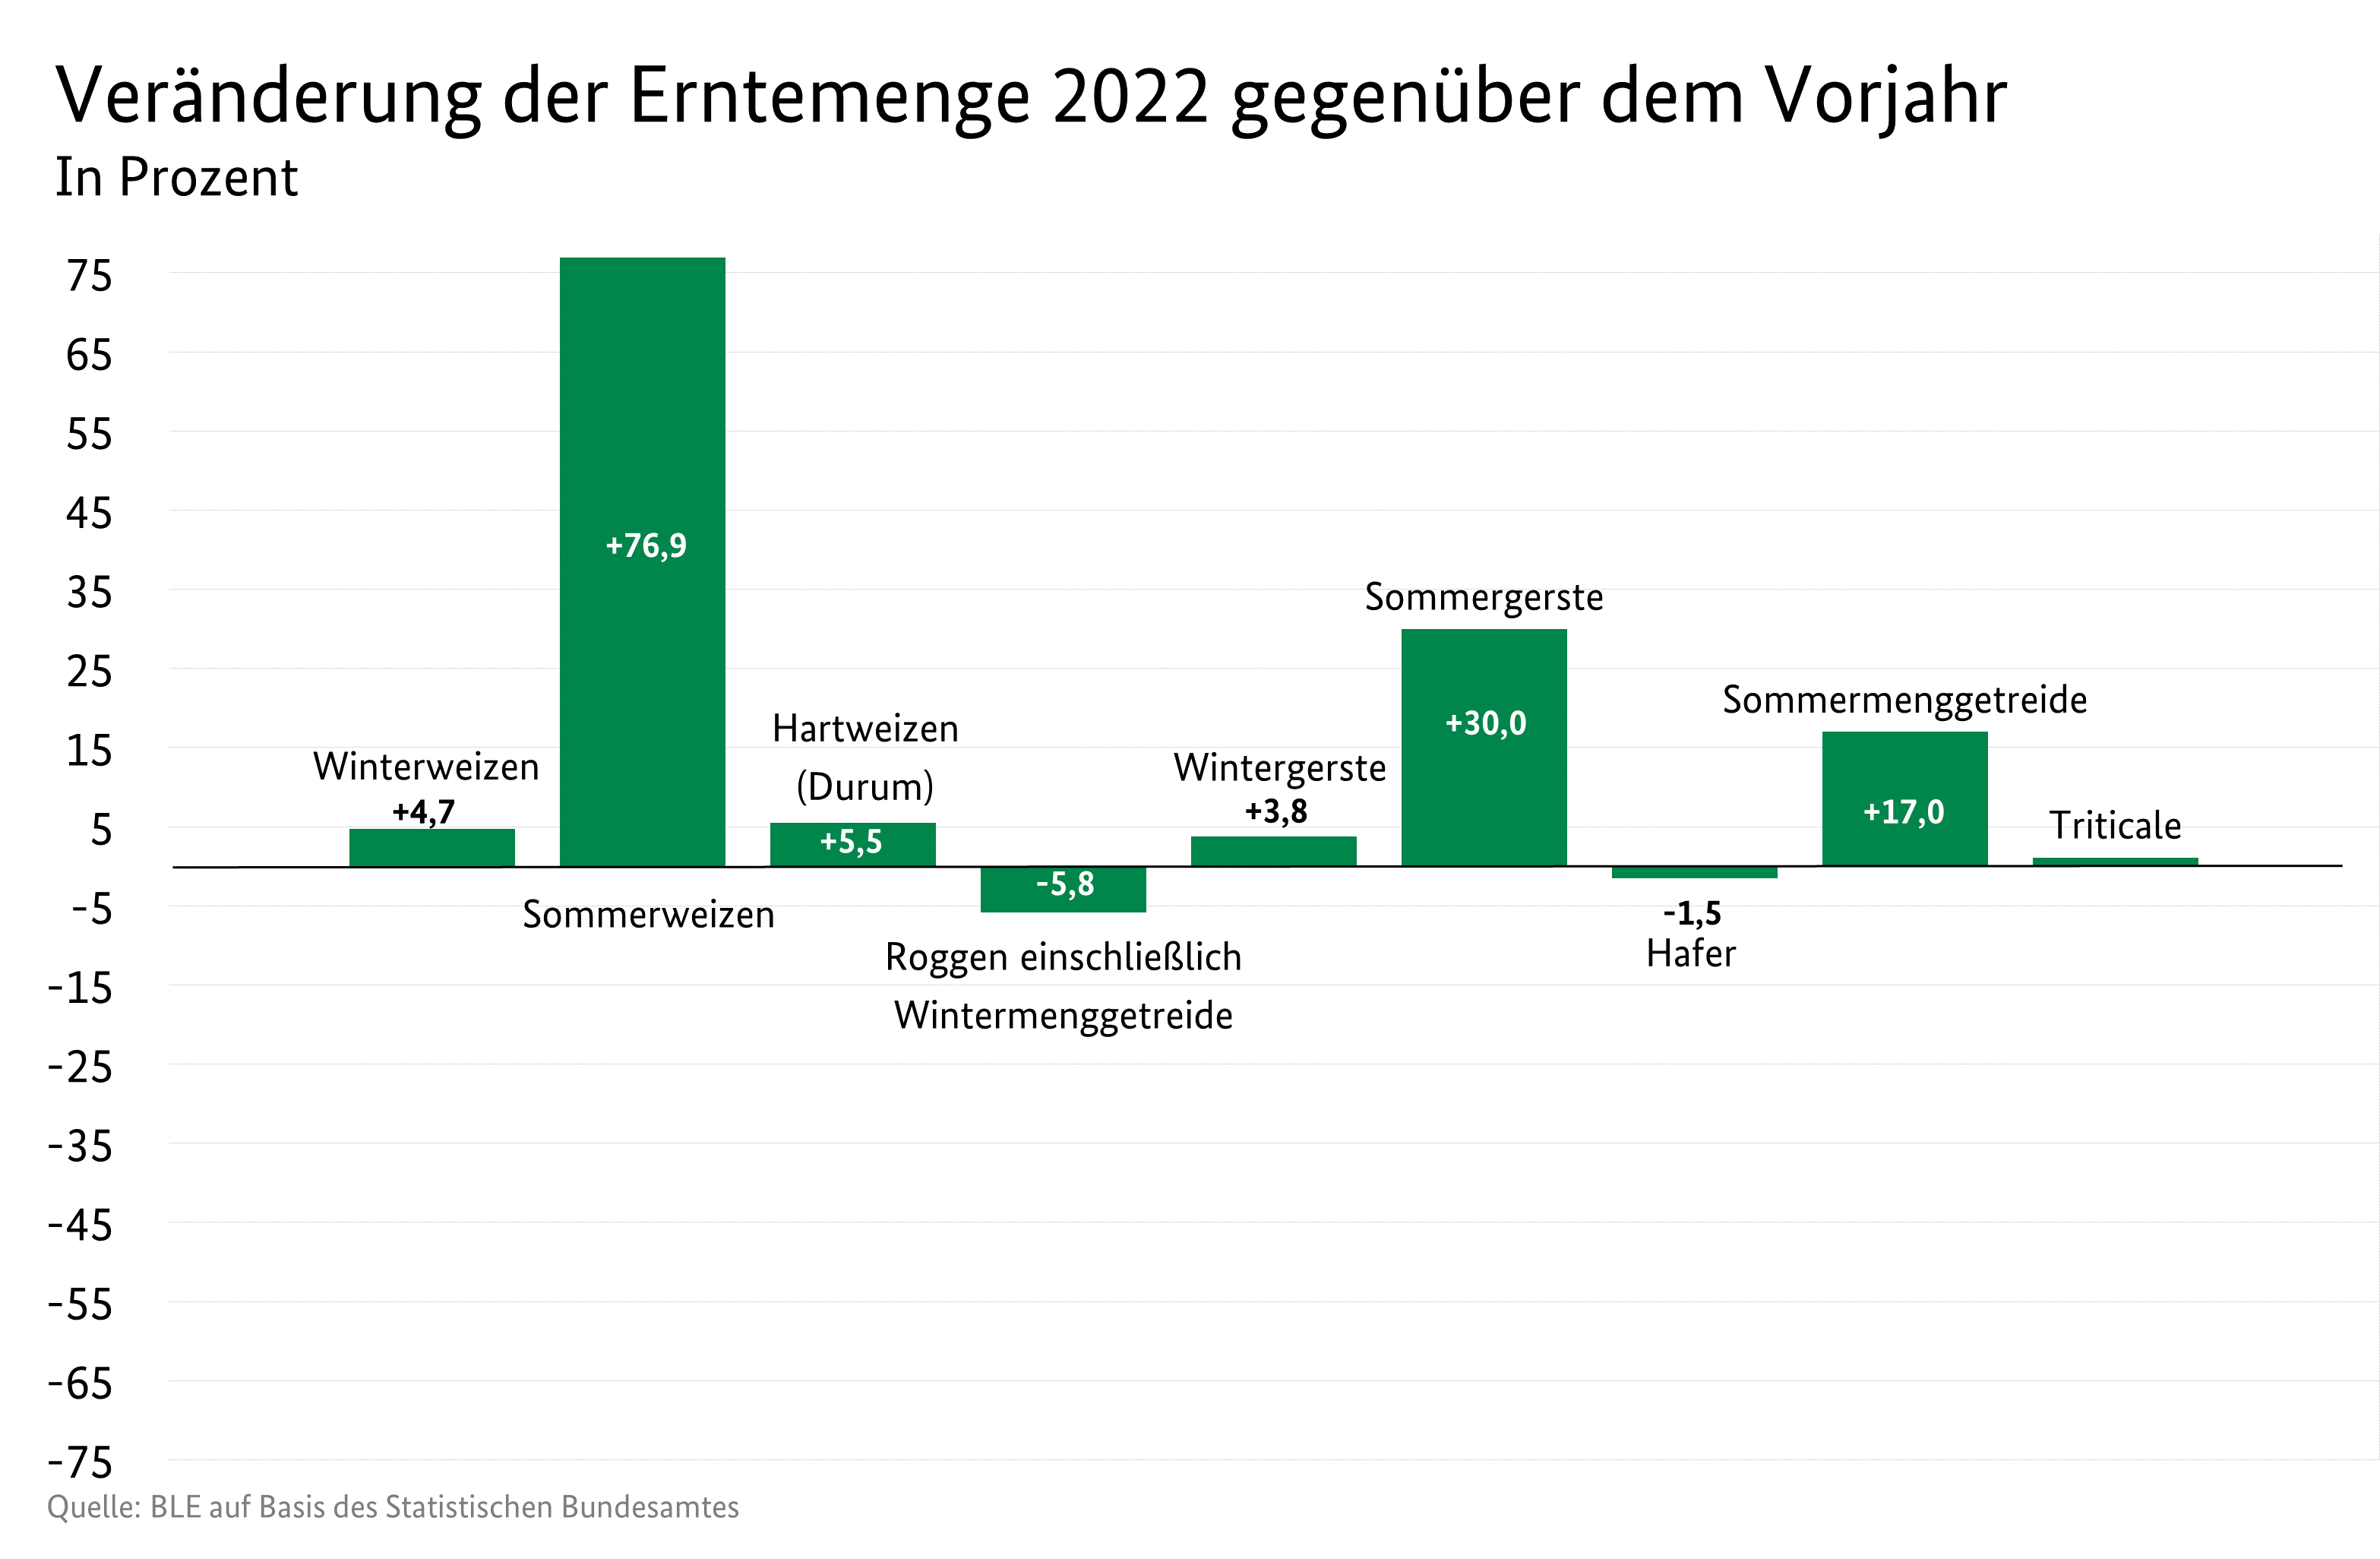 Balkendiagramm mit prozentuale Veränderung der Anbaufläche 2022 gegenüber dem Vorjahr in Prozent, Quelle: BEE auf Basis des Statistischen Bundesamtes.